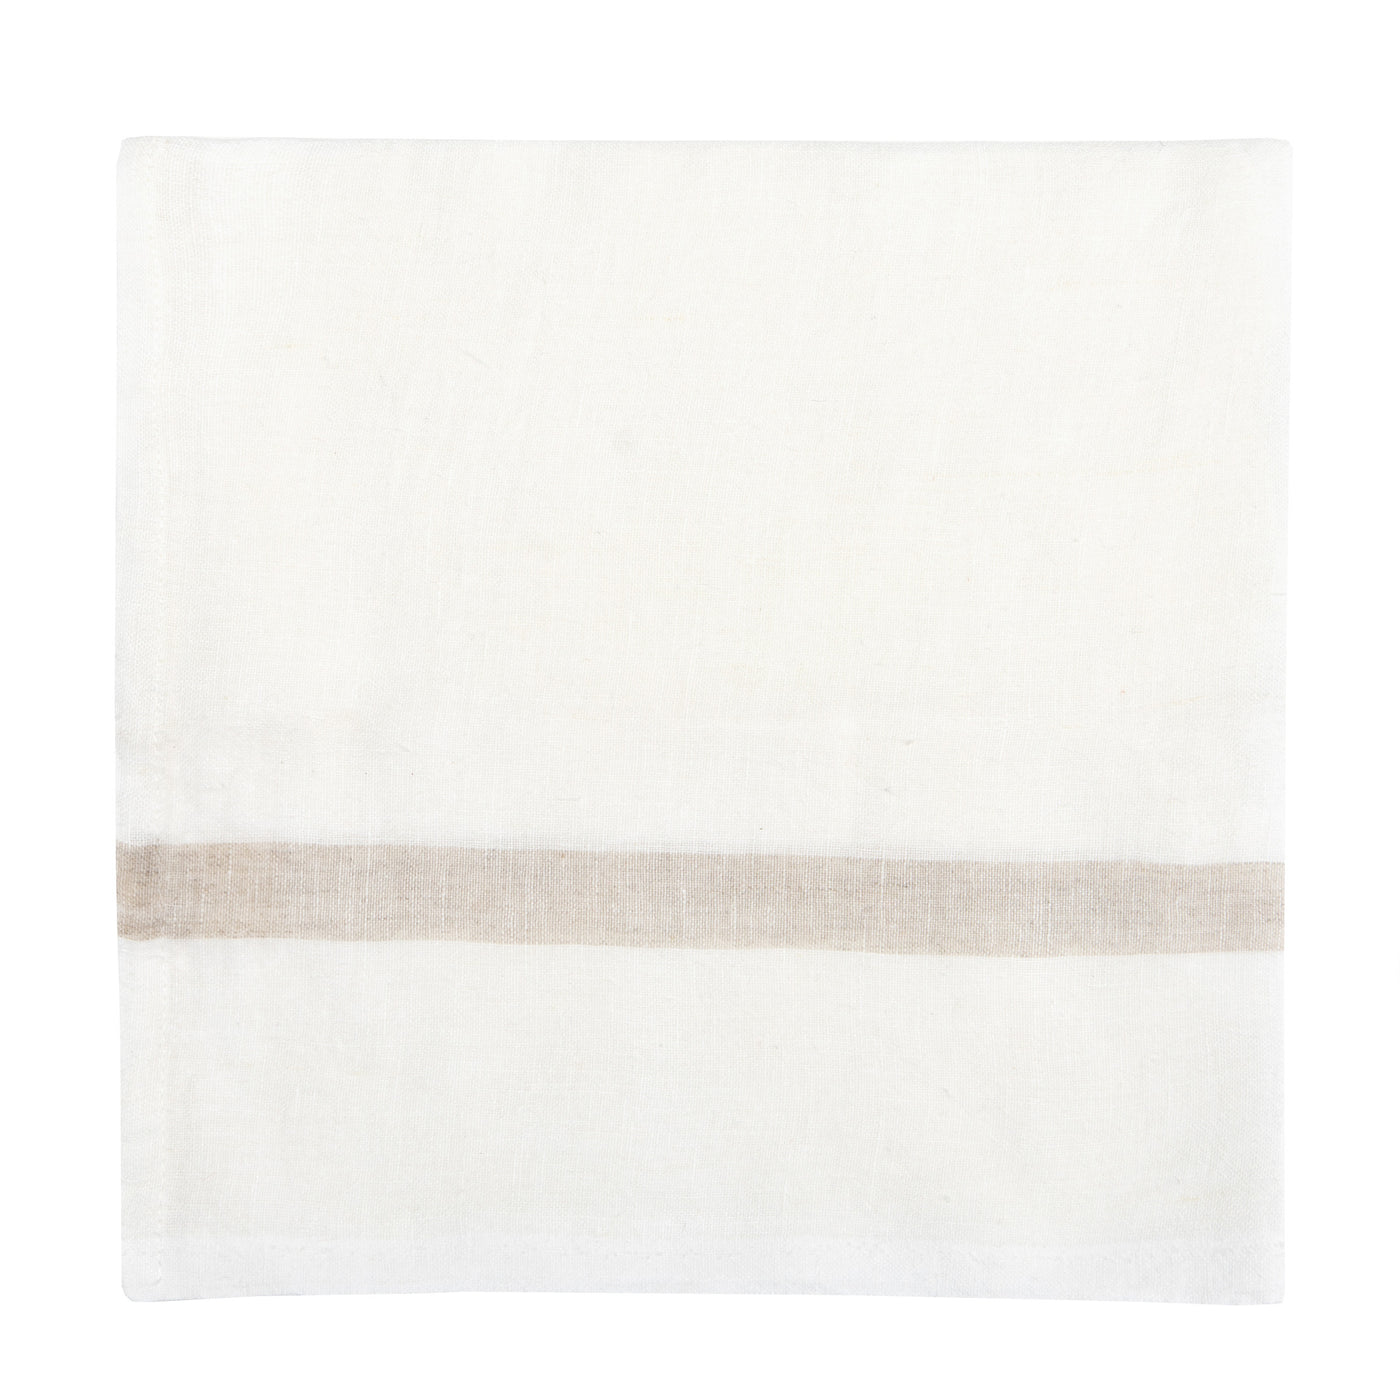 Laundered Linen Napkins White & Natural, Set of 4